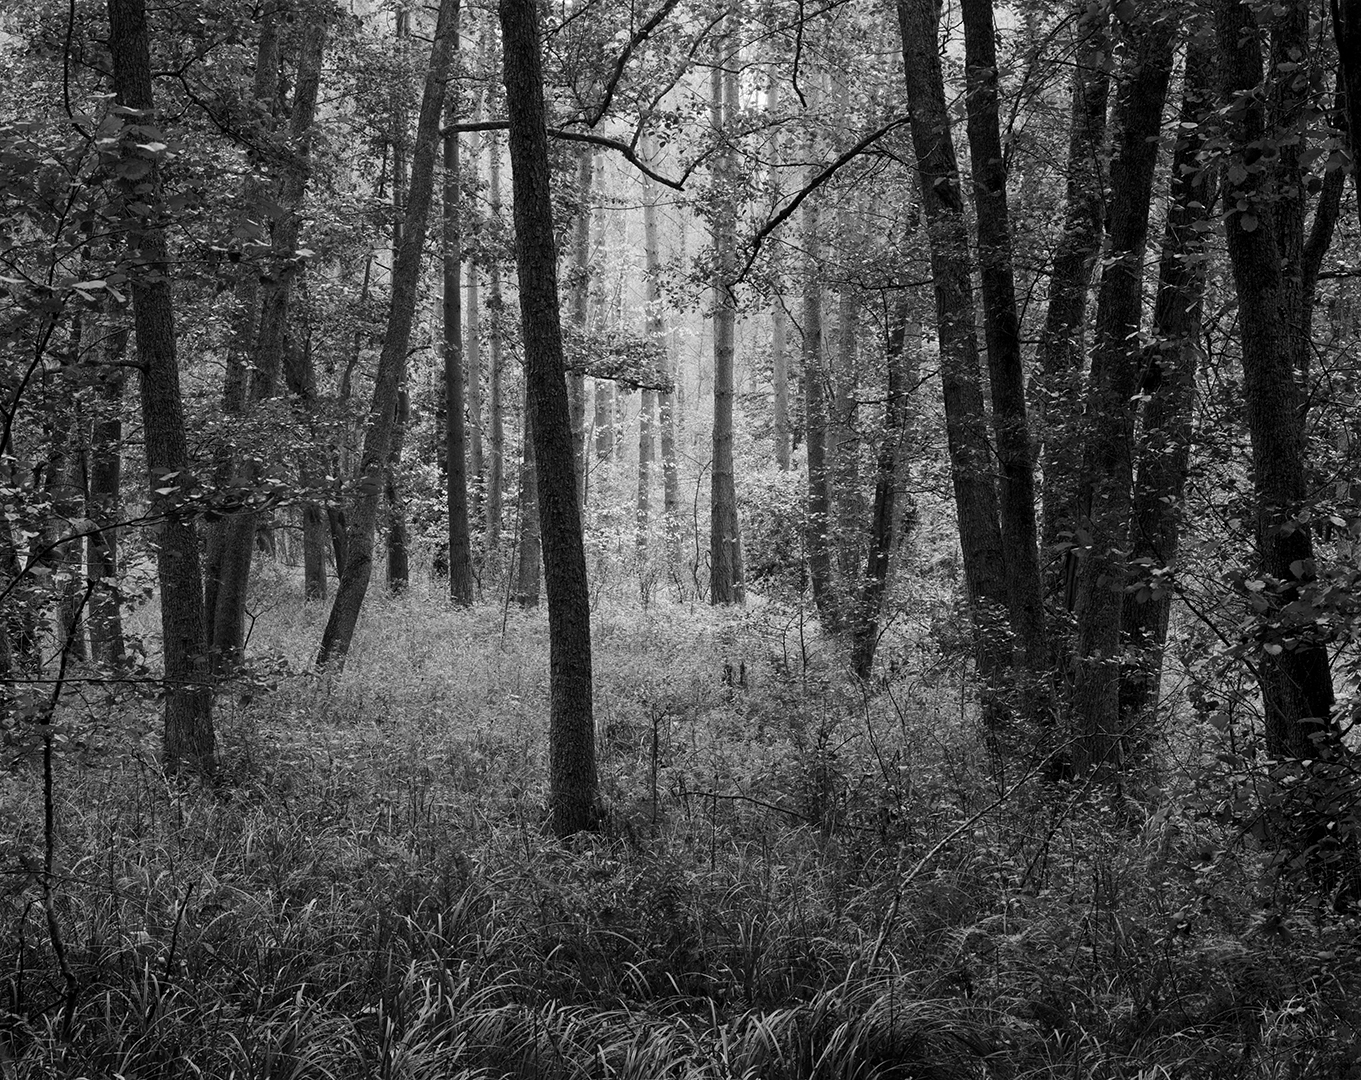 Guzowy Młyn, grąd, las, olchy, drzewa, liście jesień, czarno-biała fotografia, fotografia tradycyjna, Fotografia jest prosta! Kurs 1 na 1, Światowy Dzień Lasu 2021